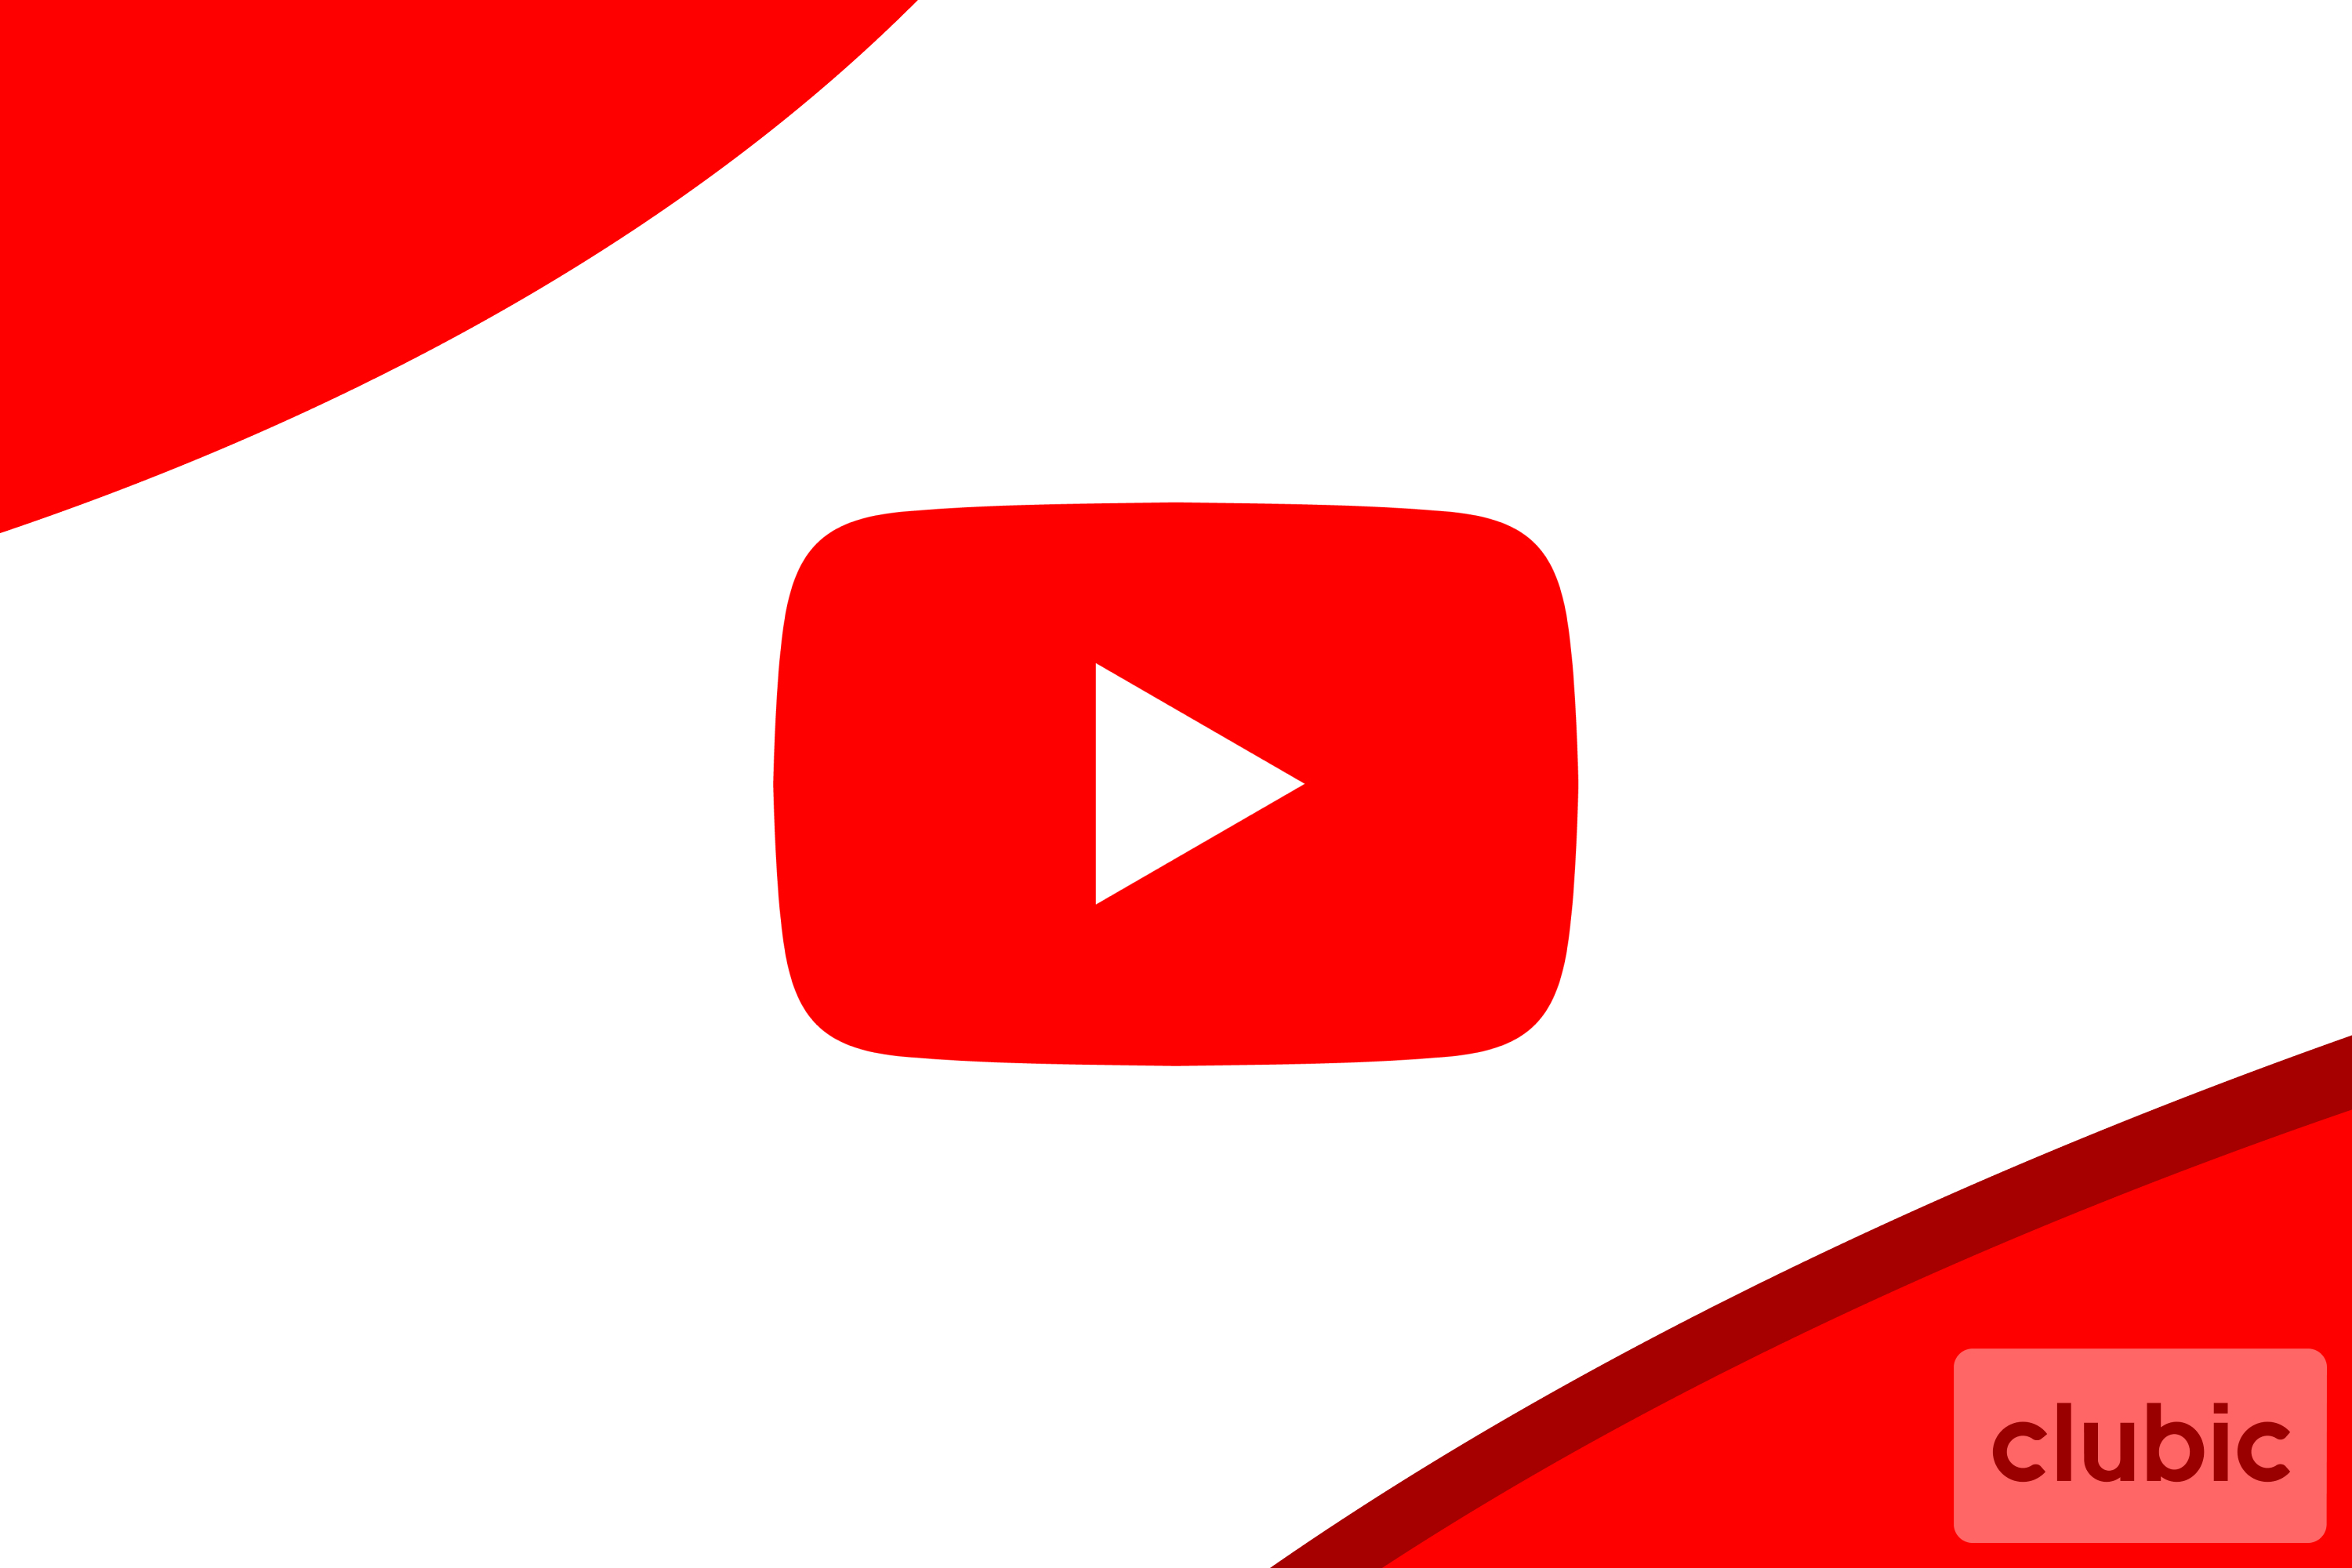 YouTube met un coup d'arrêt à ses programmes originaux